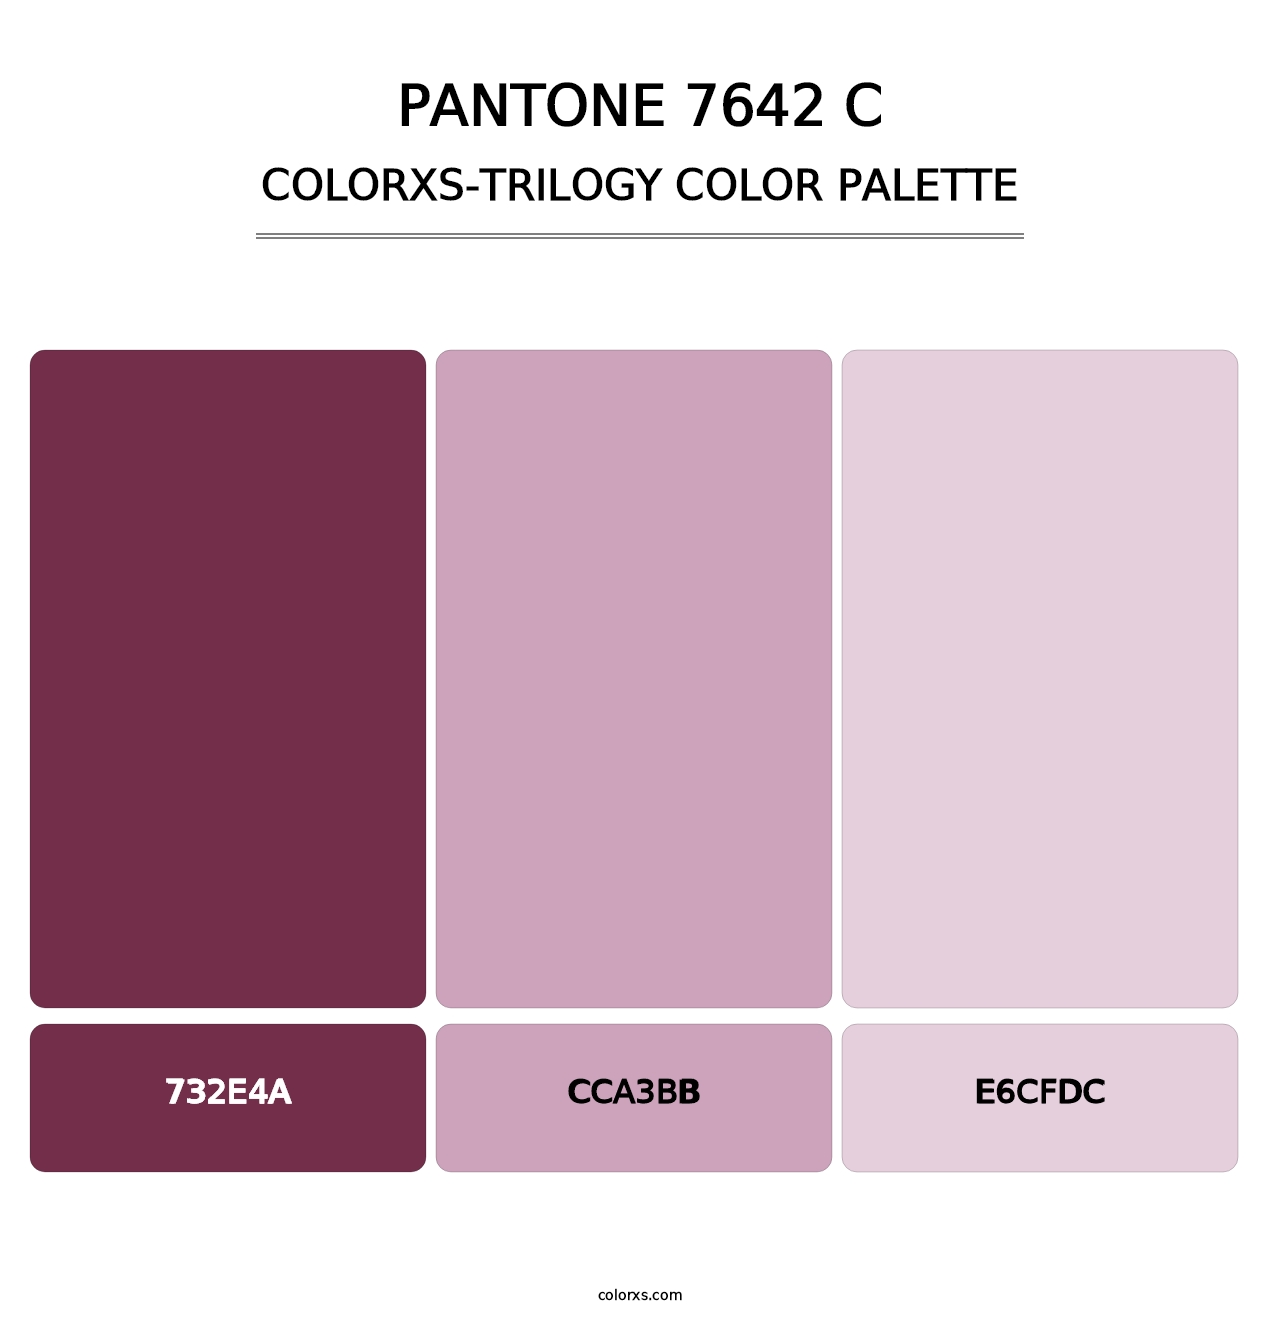 PANTONE 7642 C - Colorxs Trilogy Palette